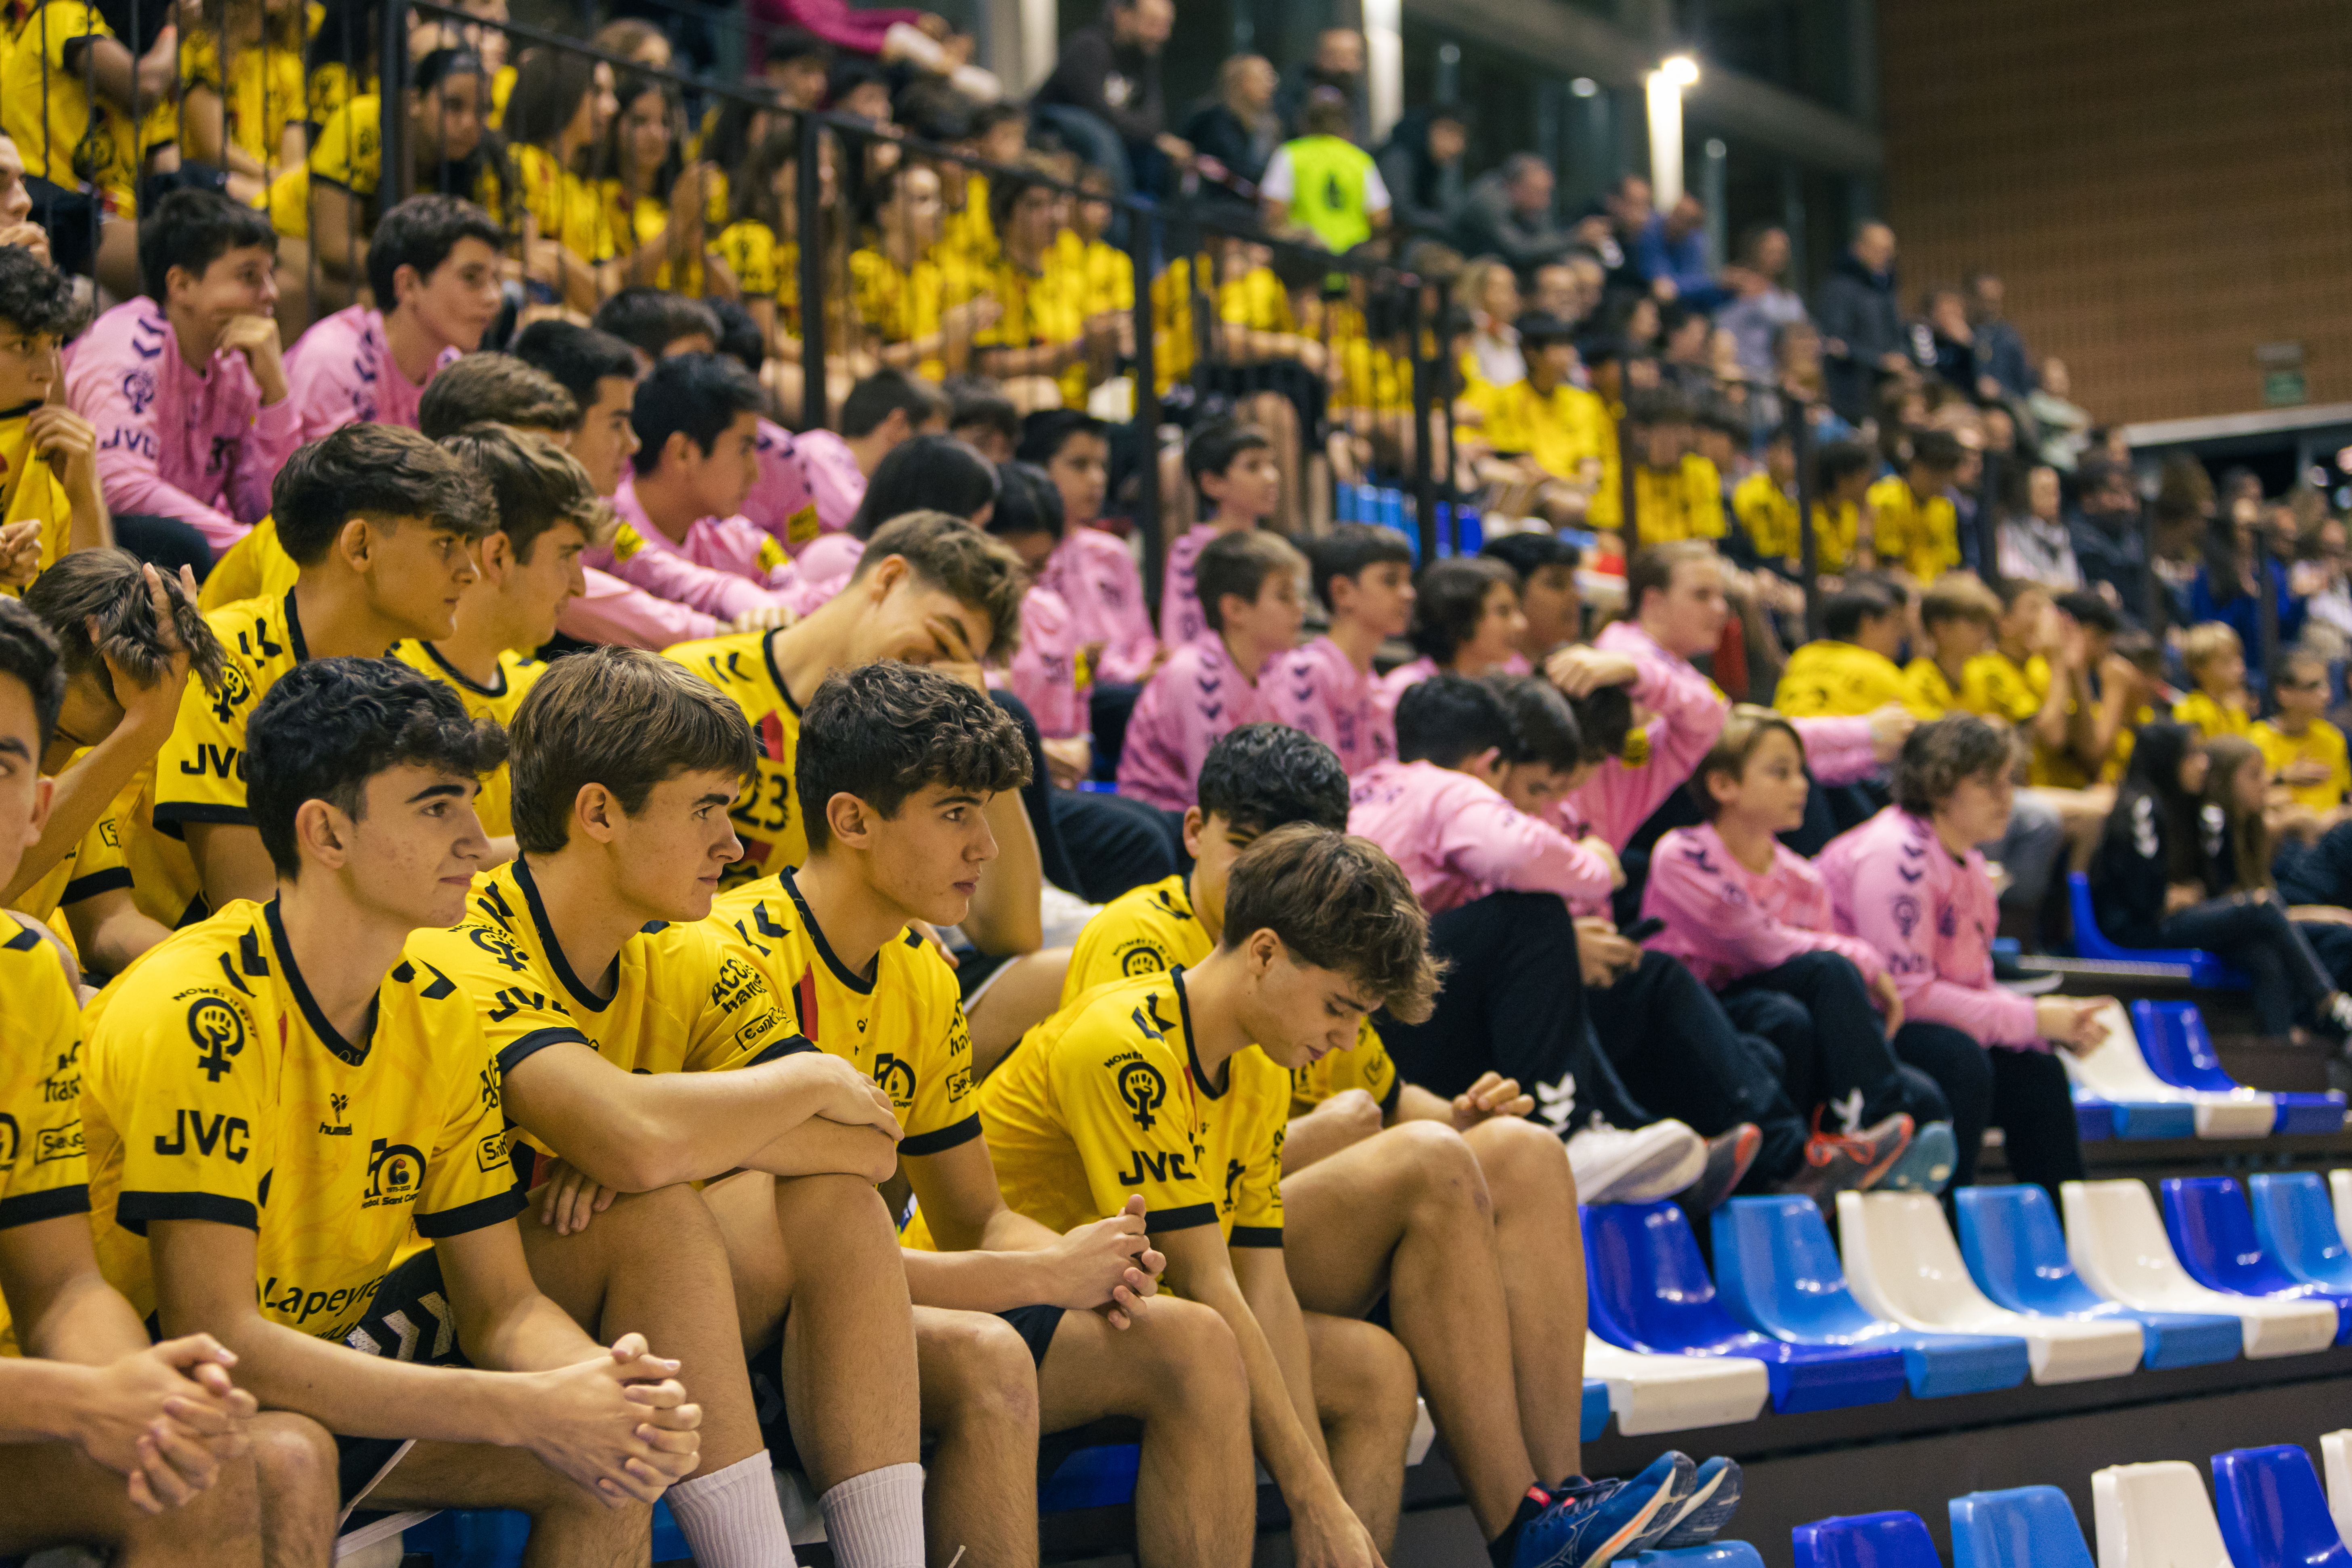 Presentació d'equips del Club Handbol Sant Cugat. FOTO: Arnau Padilla